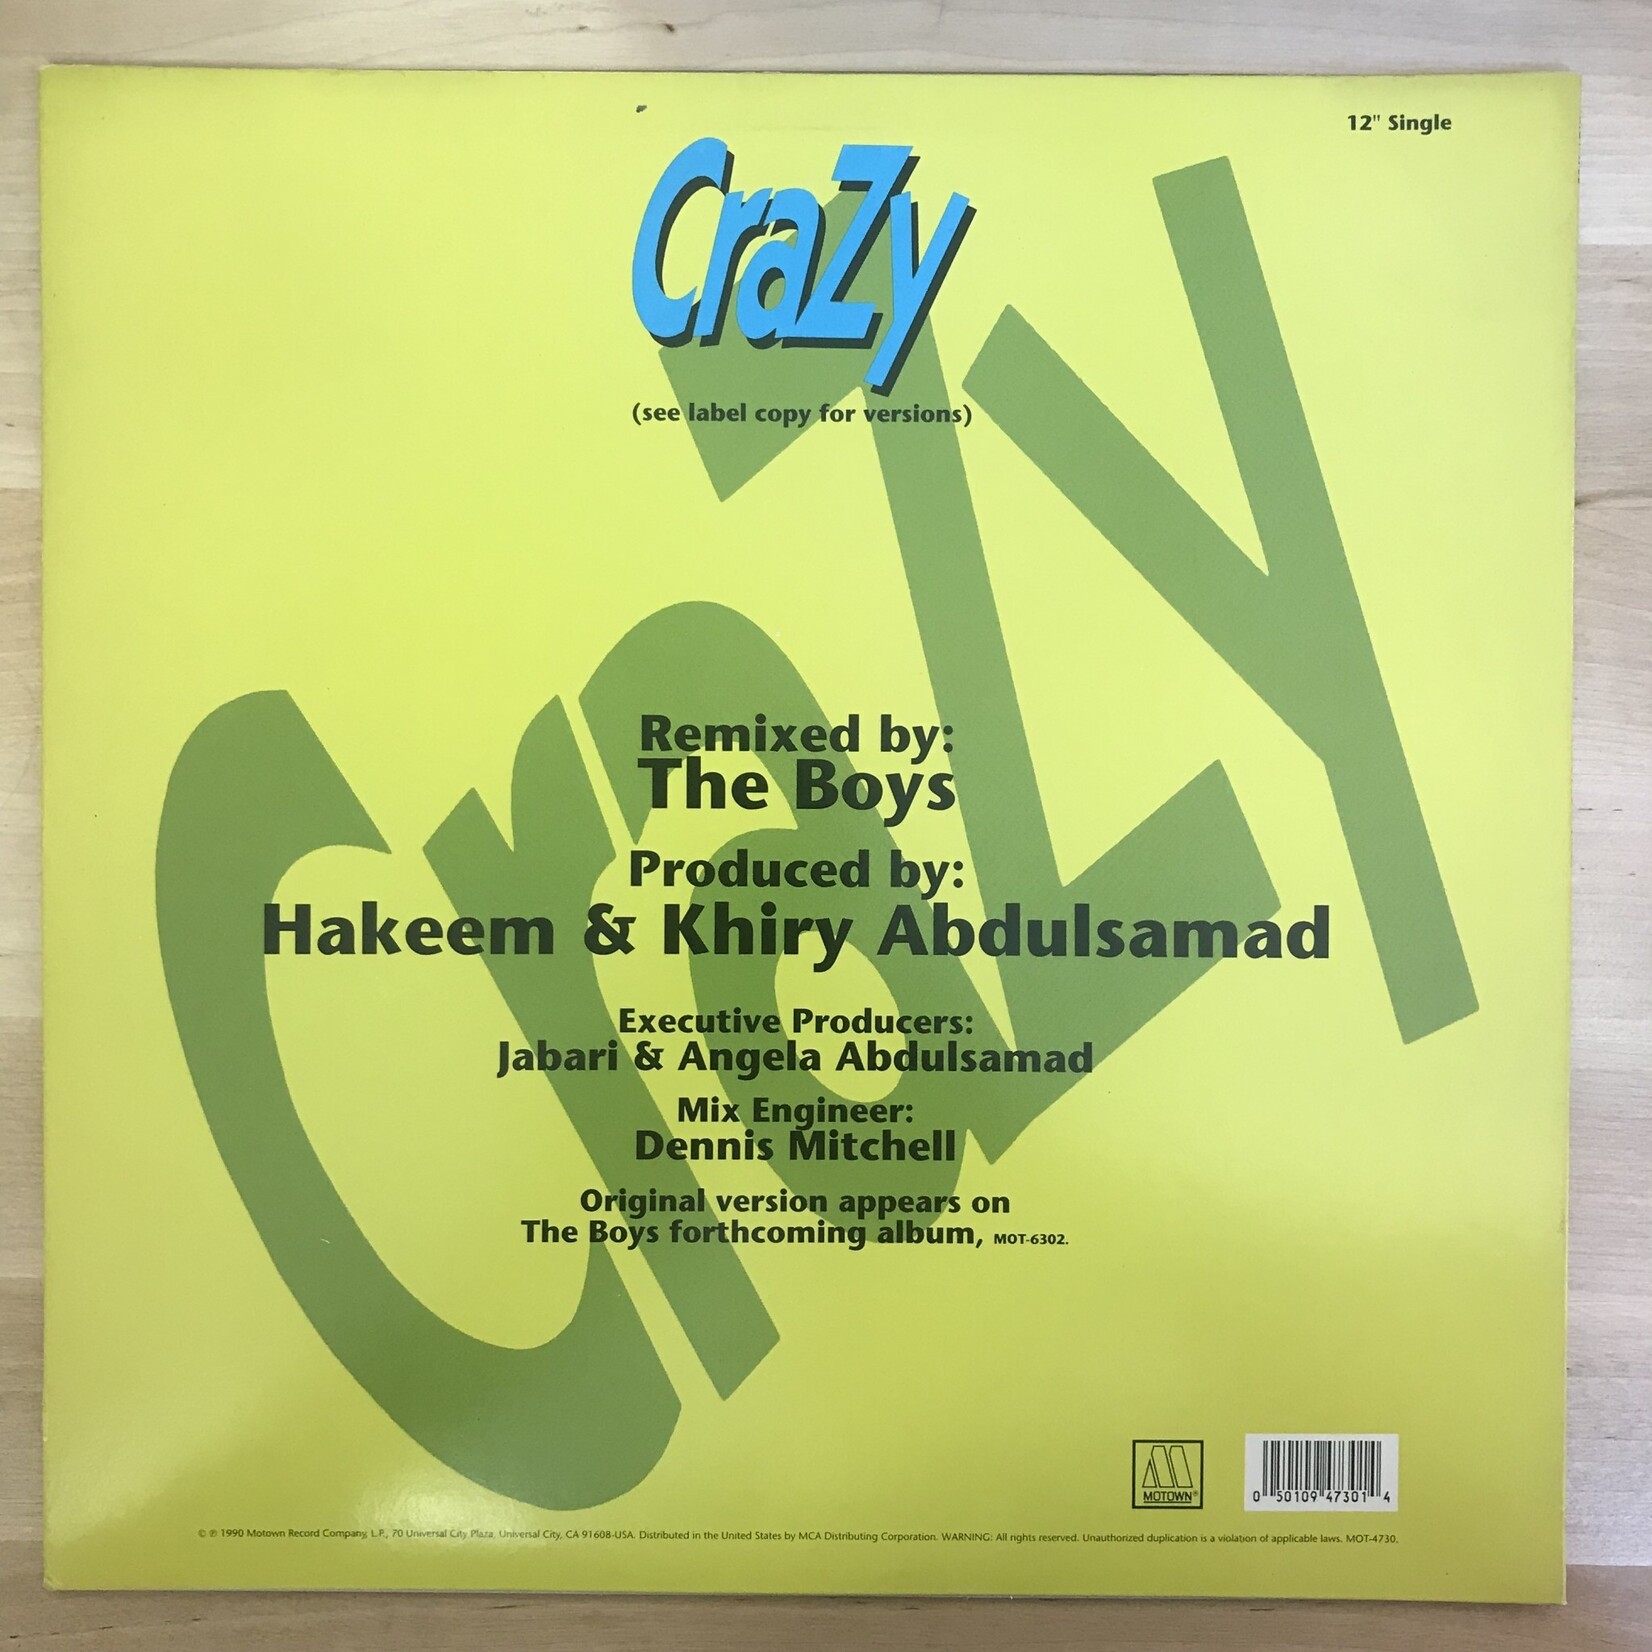 Boys - Crazy - MOT 4730 - Vinyl 12-Inch Single (USED)